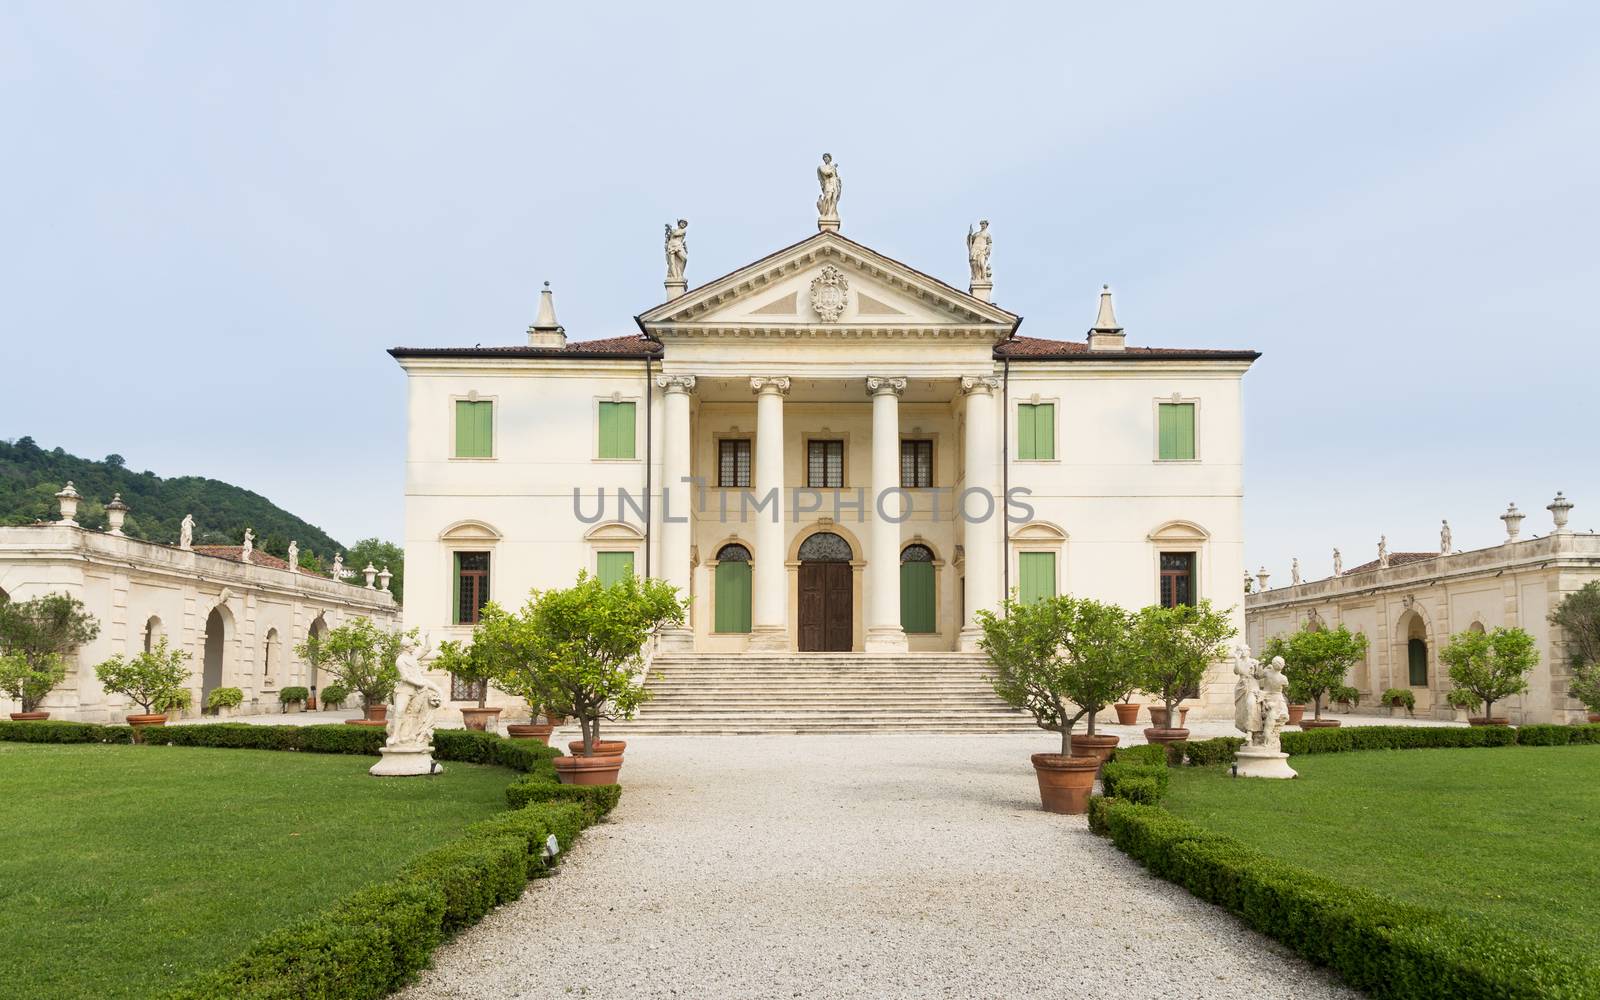 Vicenza, Veneto, Italy - Villa Cordellina Lombardi, built in 18t by Isaac74